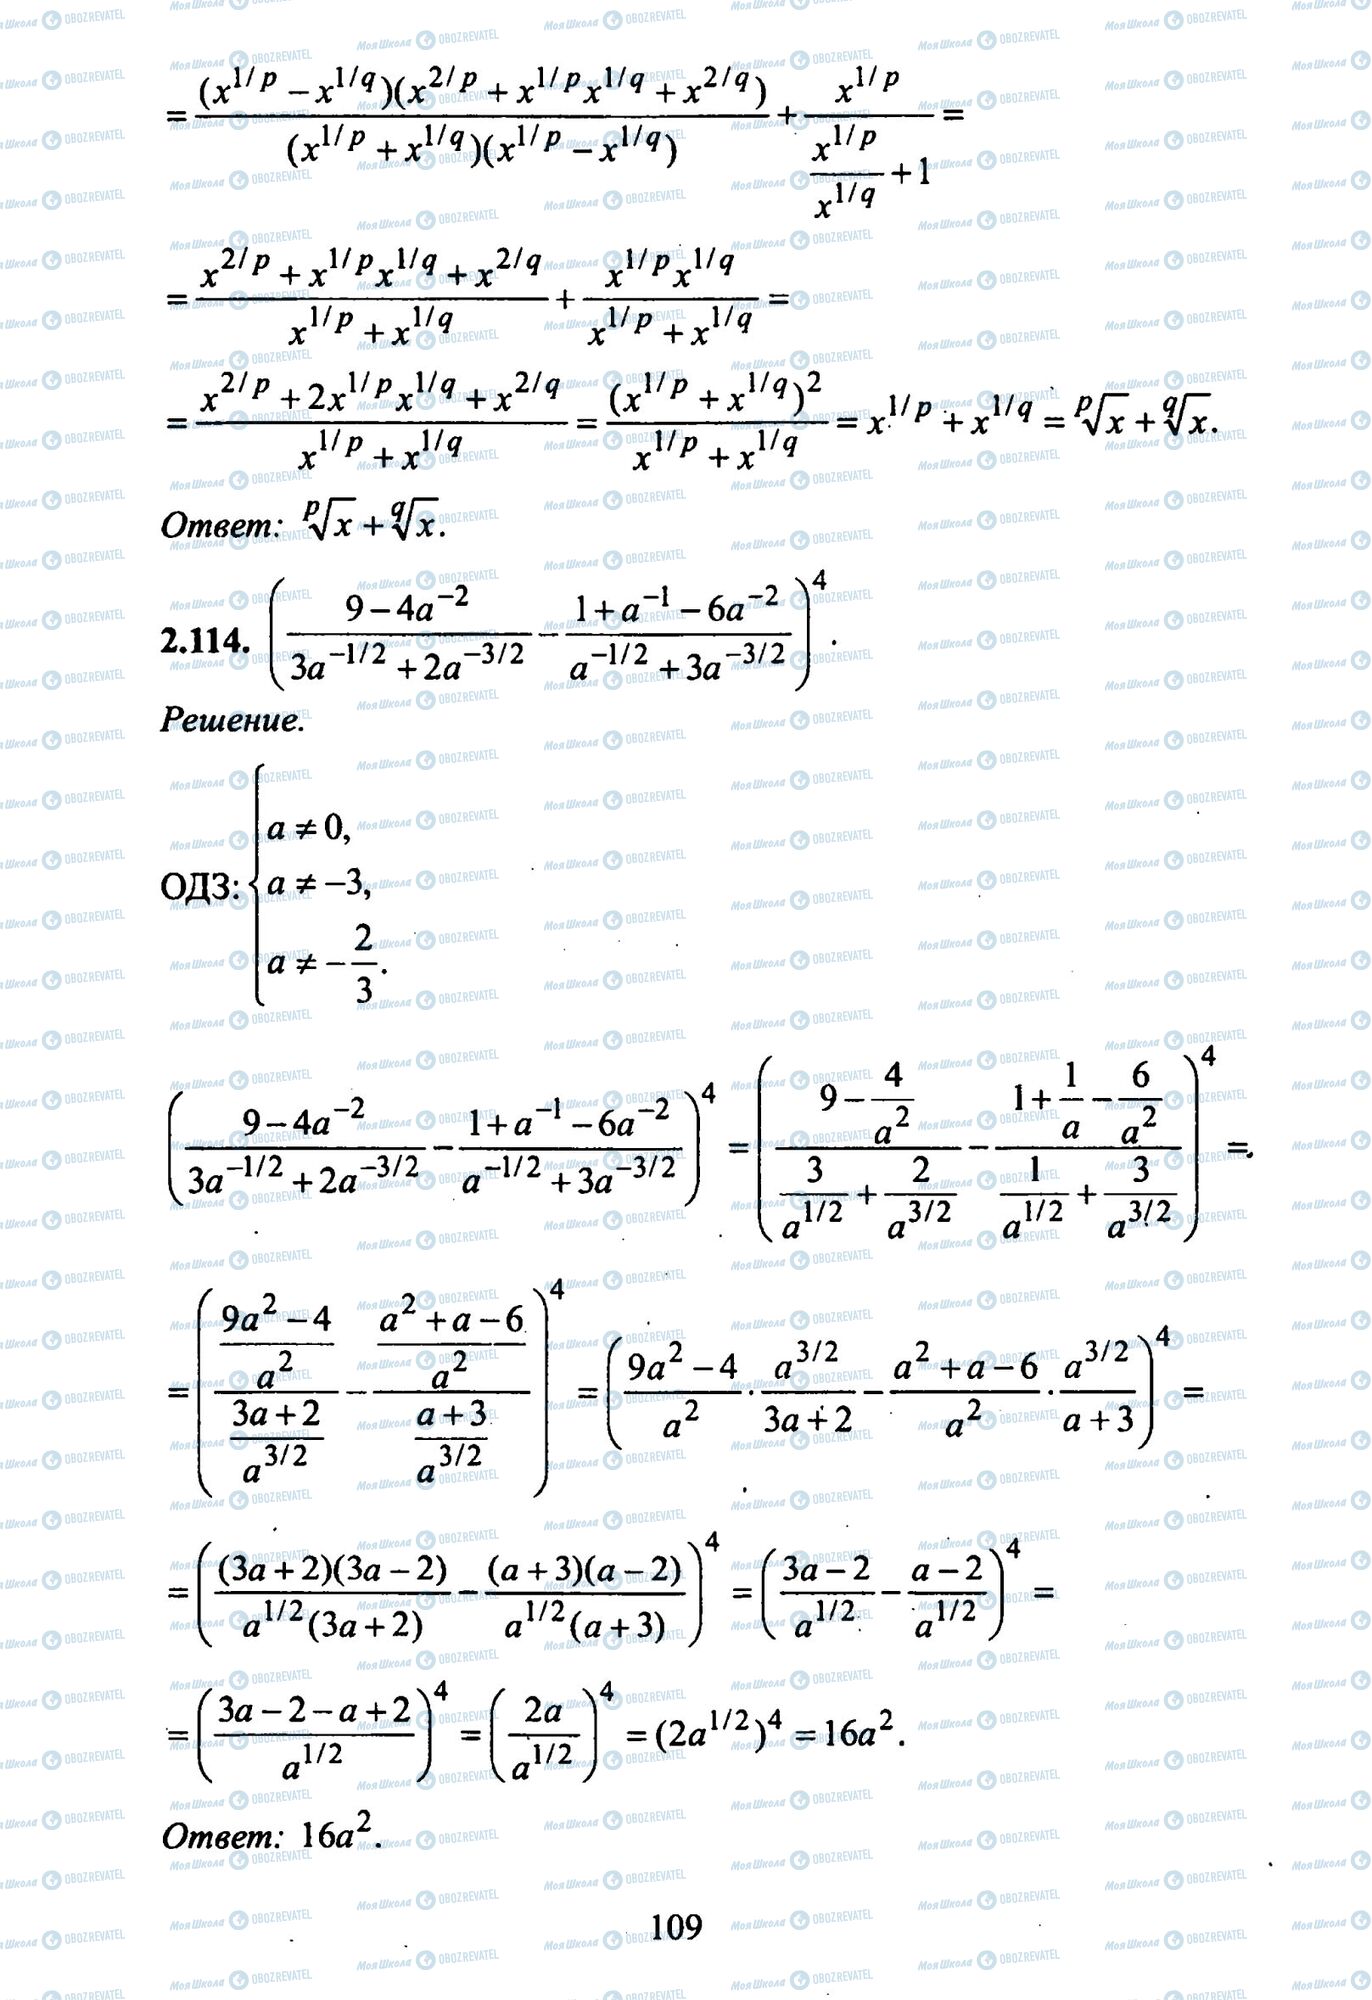 ЗНО Математика 11 клас сторінка 114